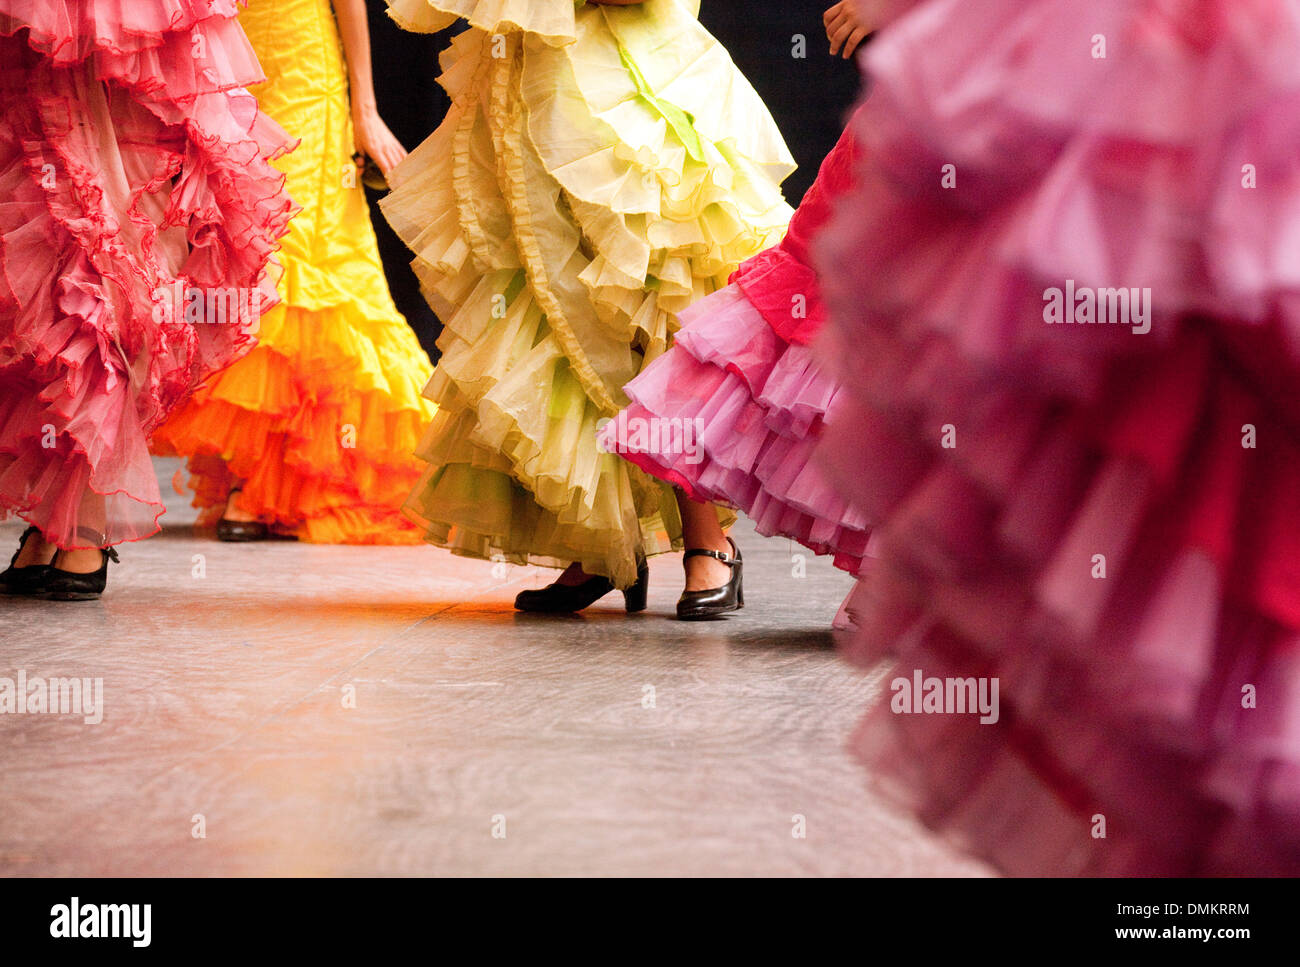 El baile flamenco, coloridos vestidos y bailarines, La Habana, Cuba, América latina Foto de stock